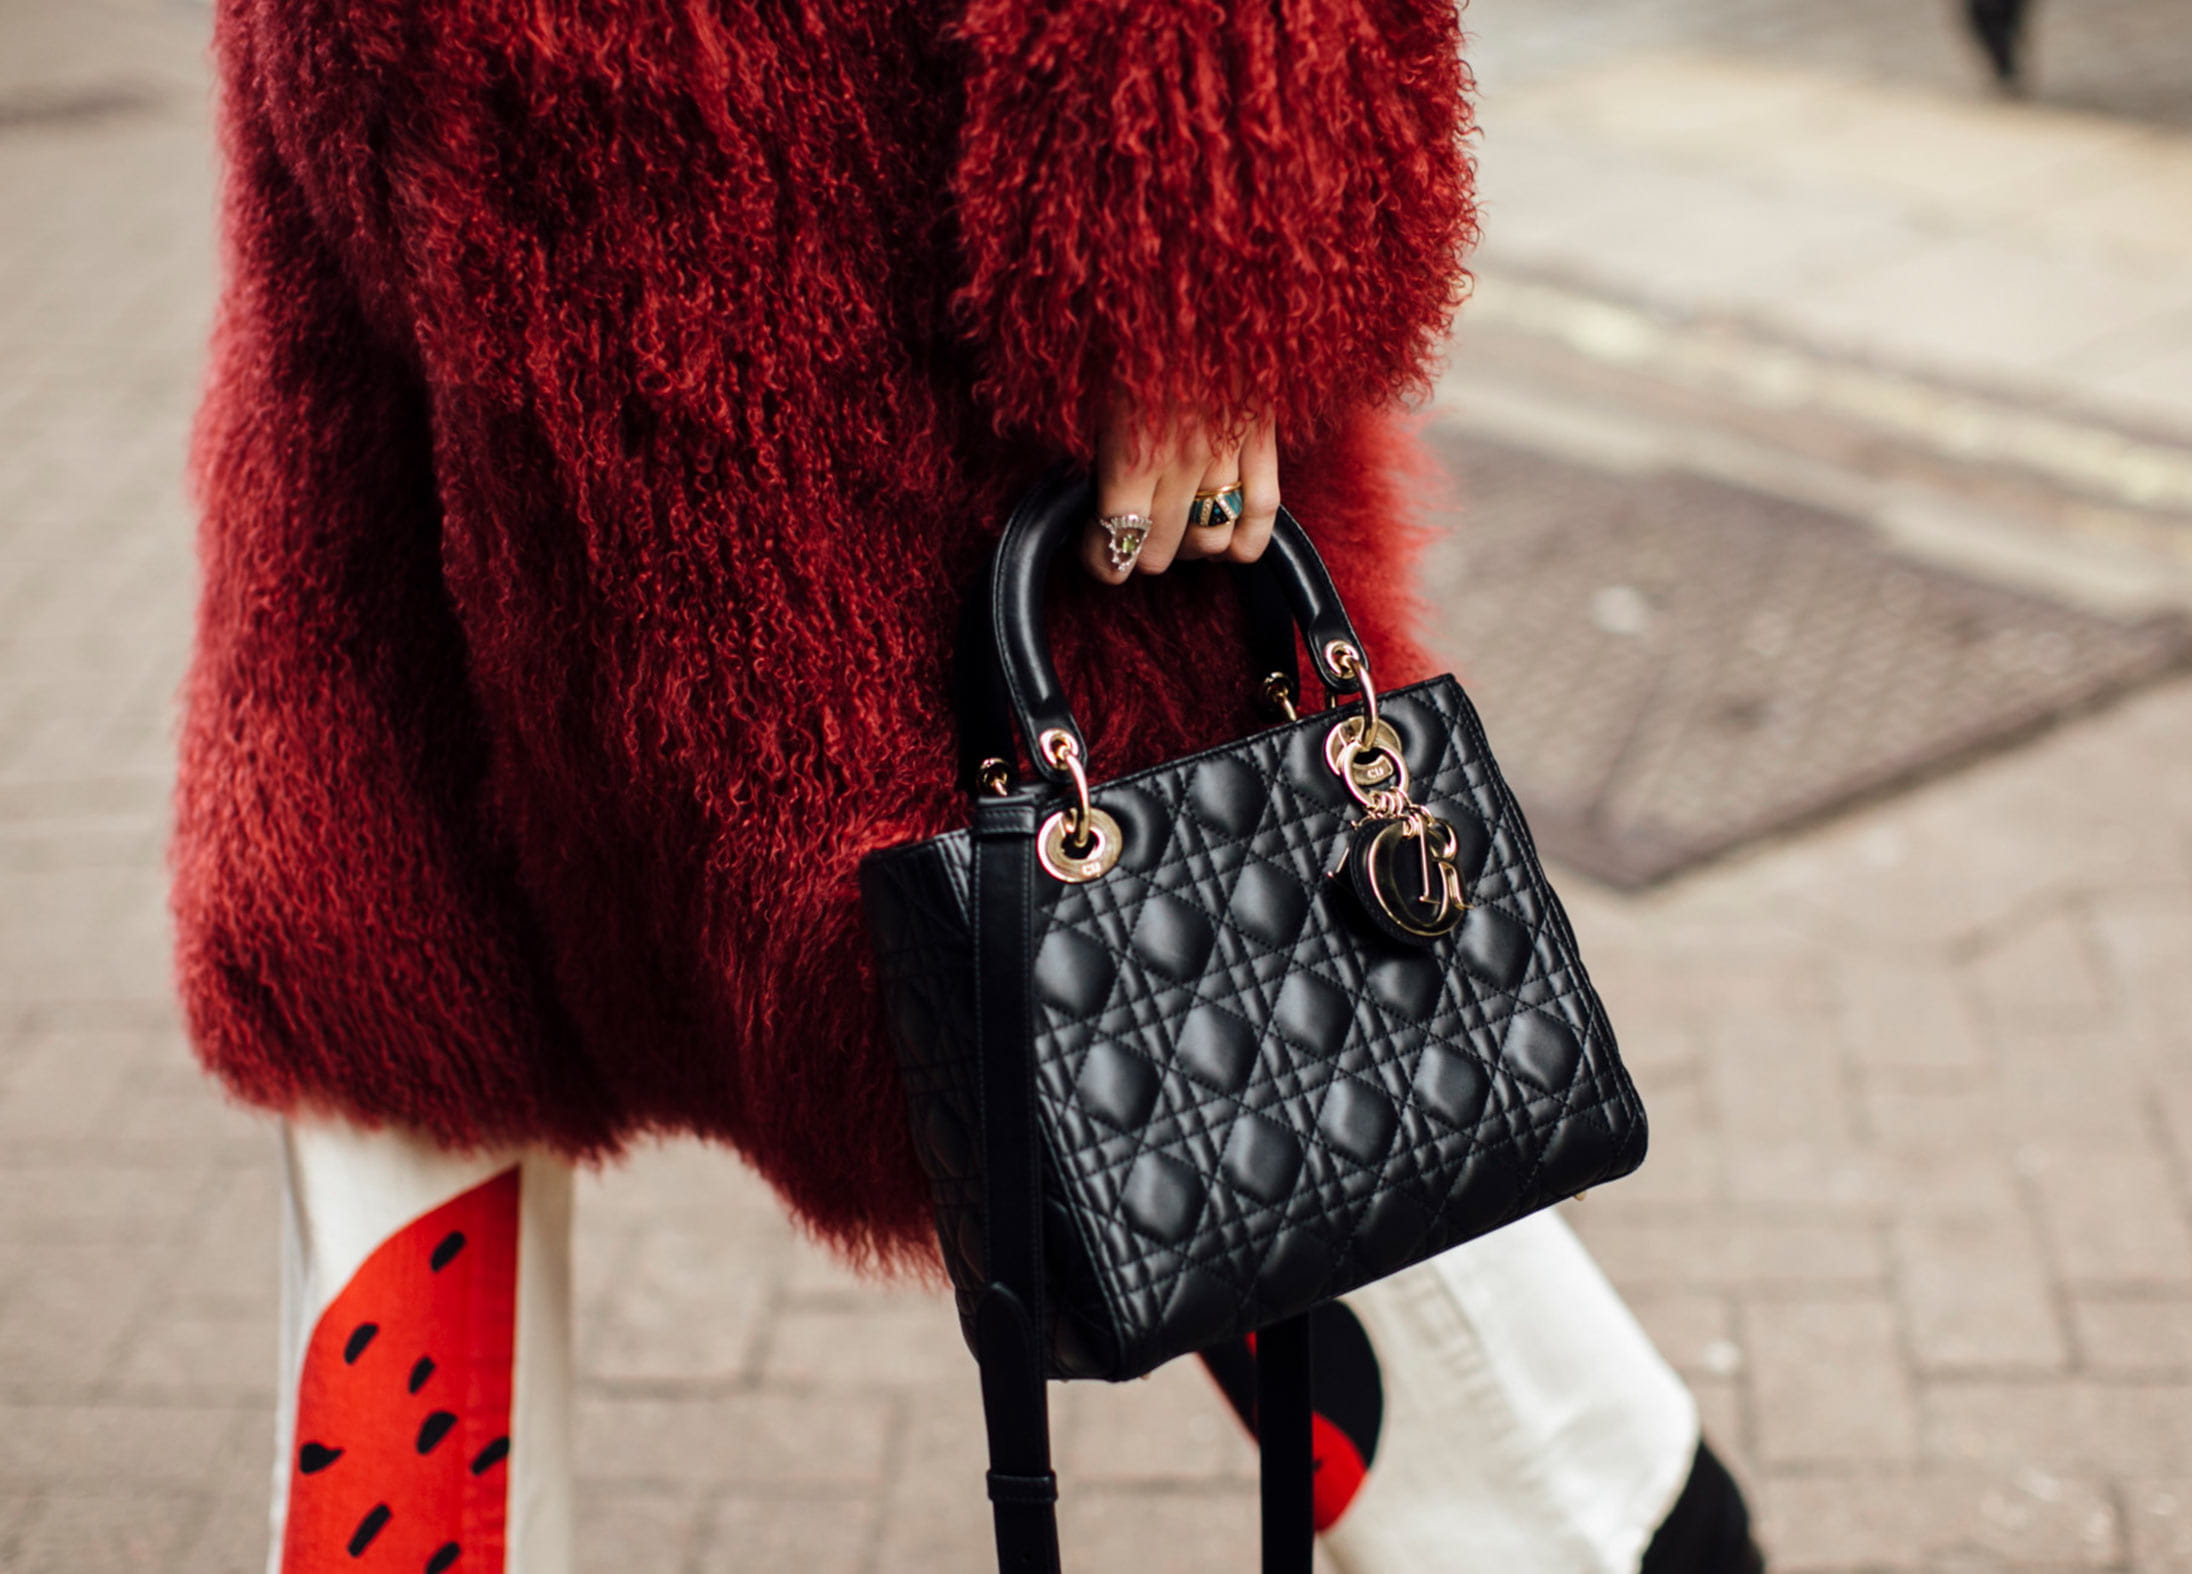 DIOR’s Lady Dior handbag